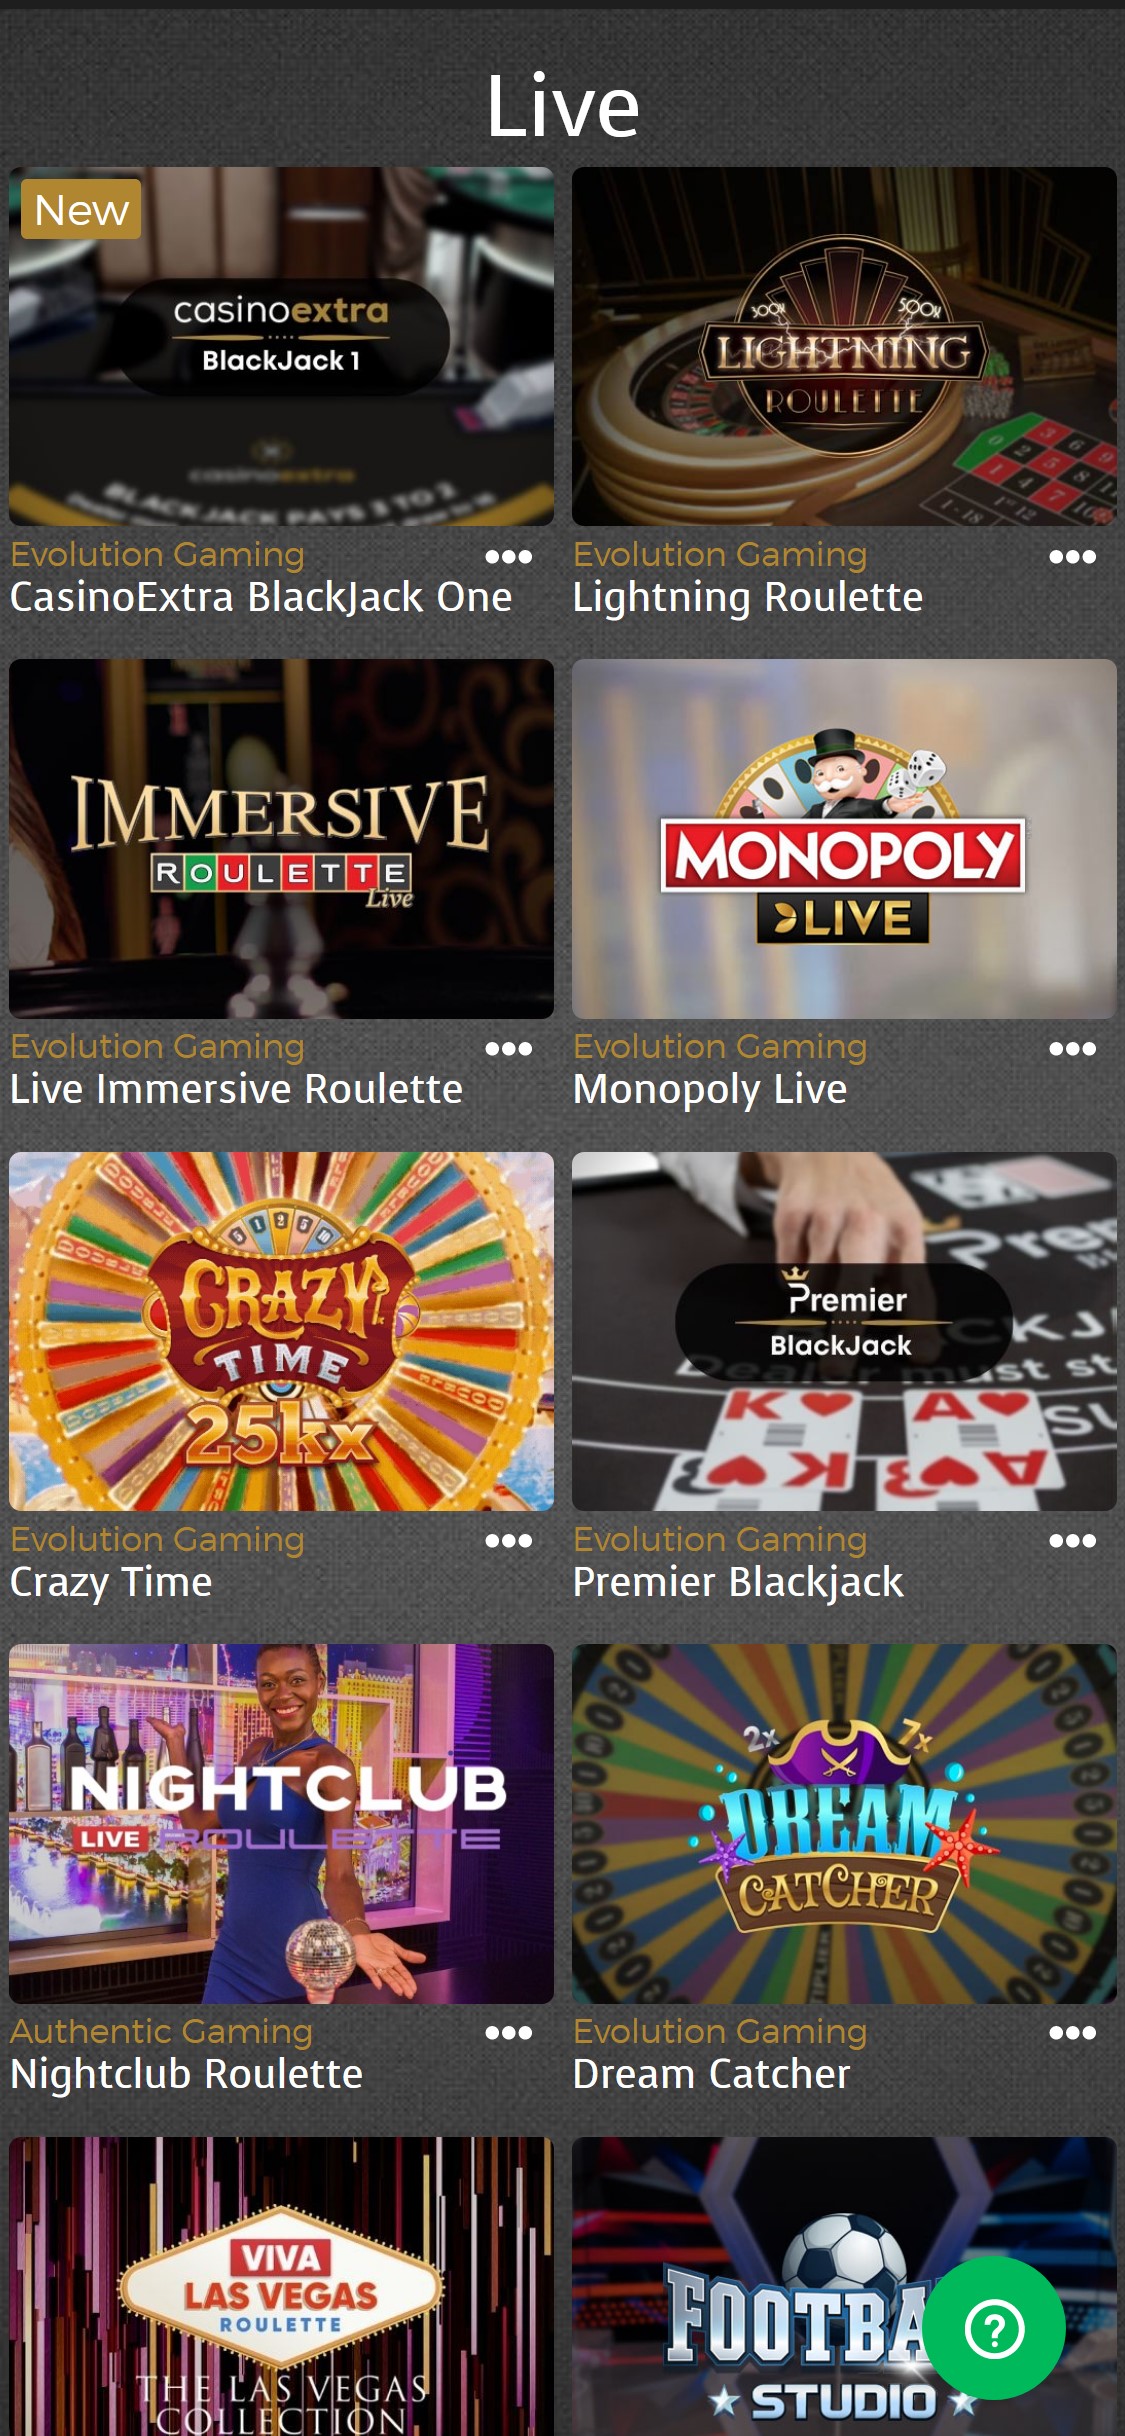 Casino Extra Mobile Live Dealer Games Review